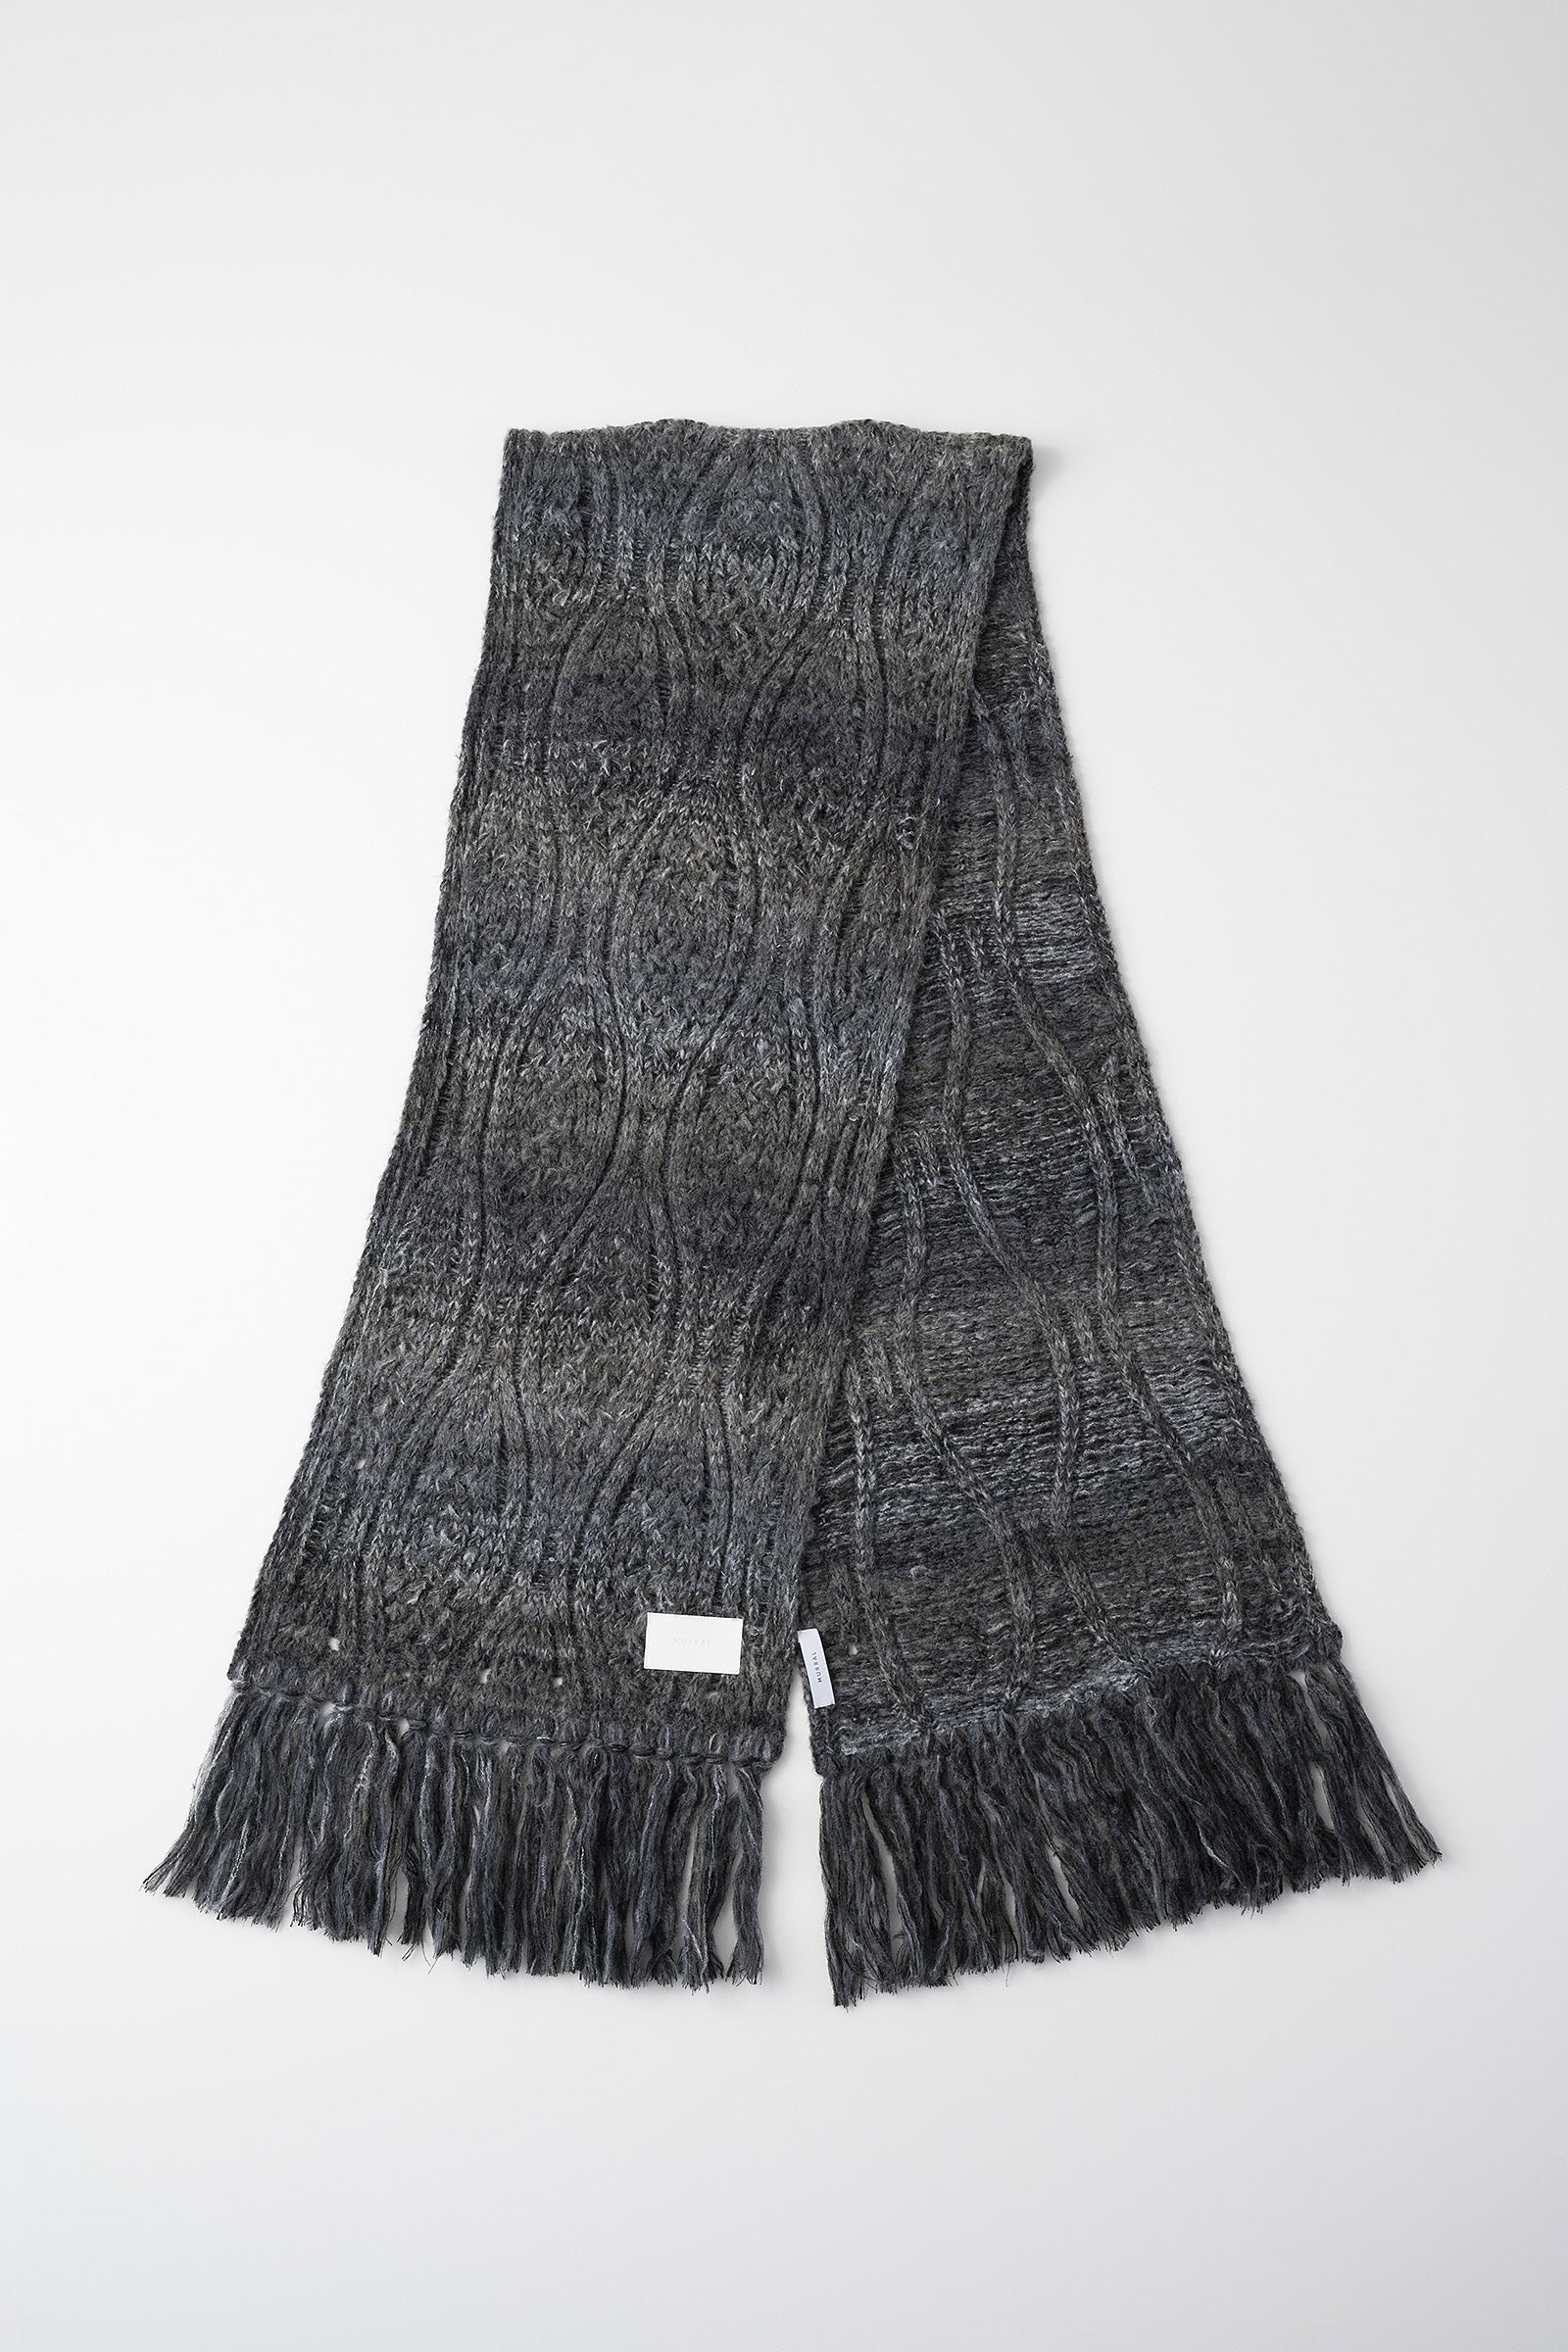 Hazy knit Scarf (Black)